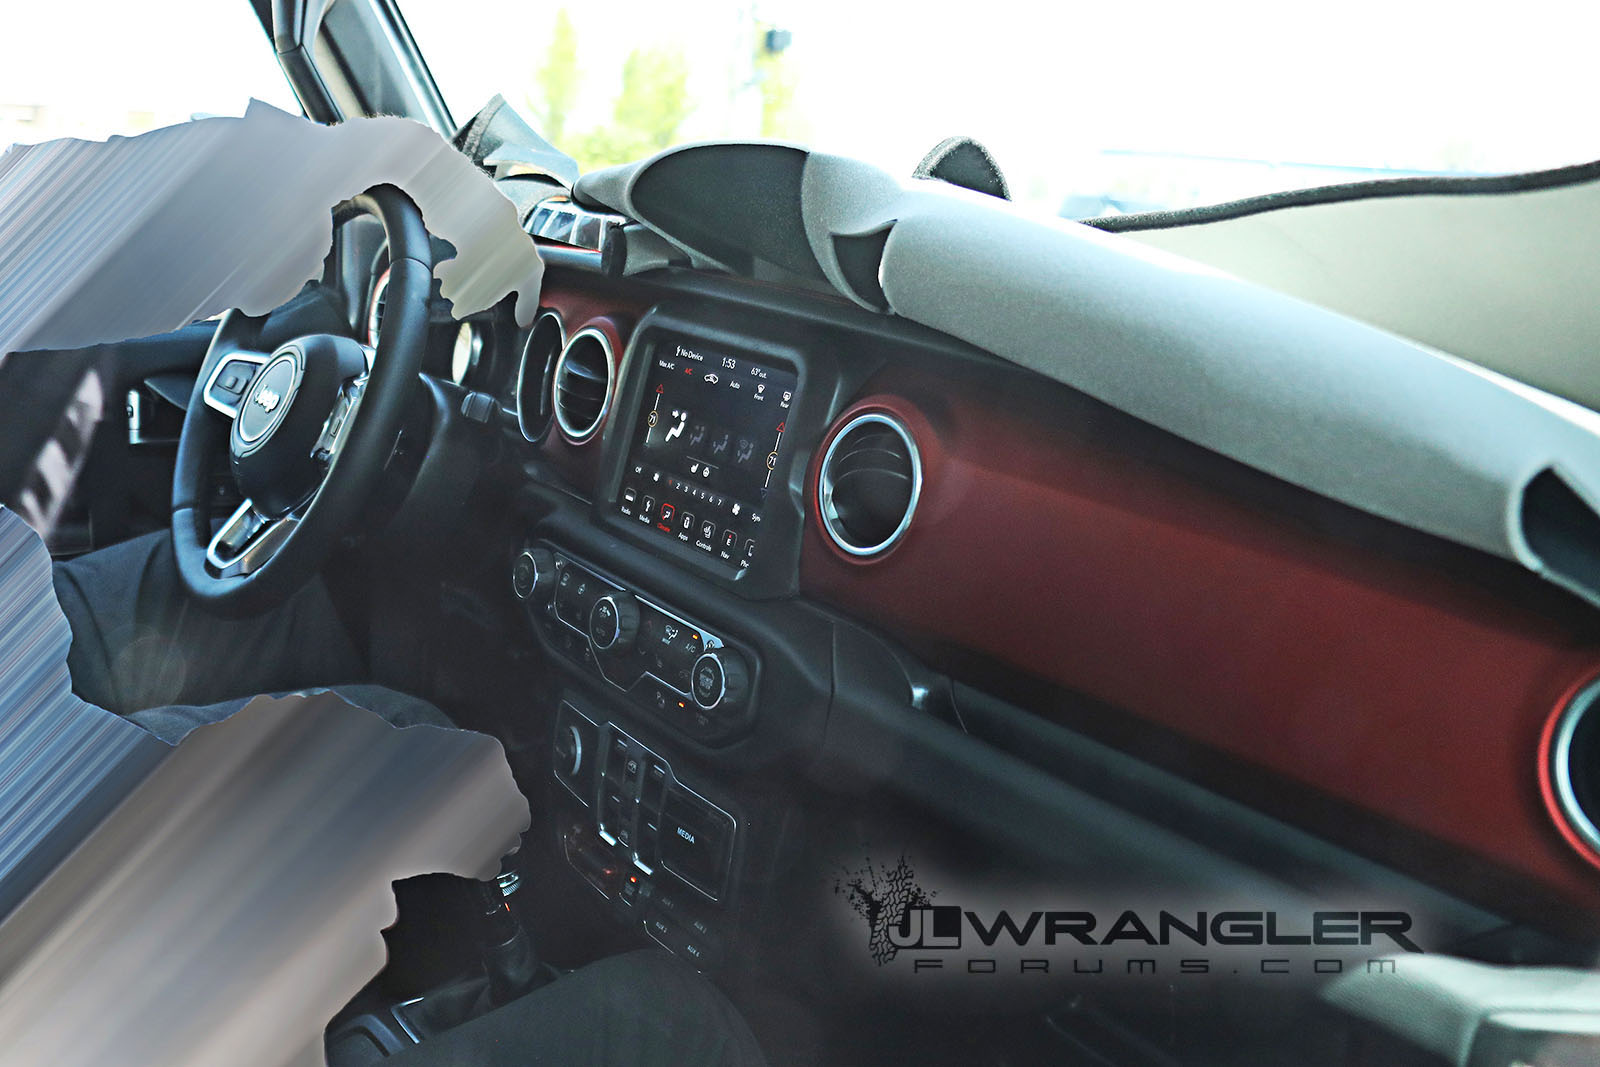 2018 Jeep Wrangler interior spied, reveals all-new design